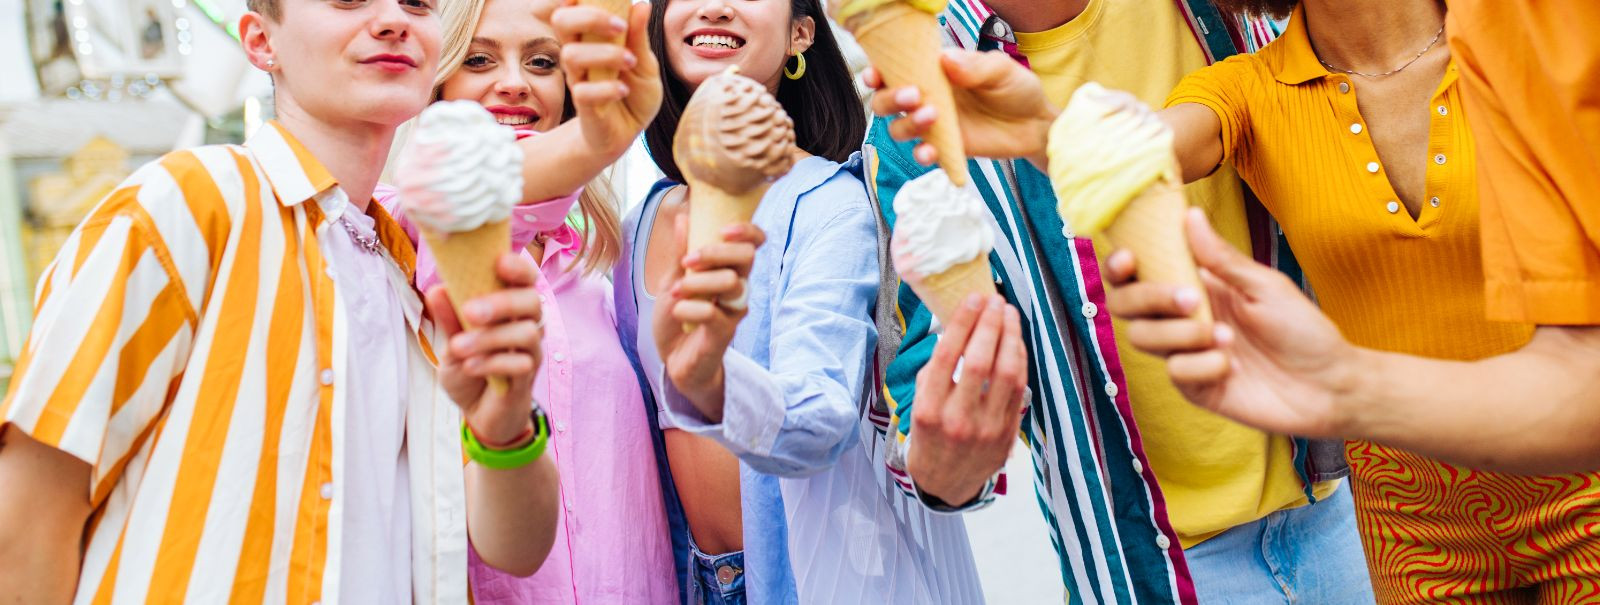 Jäätise pidu on meeldiv üritus, kus inimesed tulevad kokku, et nautida jäätist ja üksteise seltskonda. See on tagasipöördumine lihtsamate aegade juurde, pakkude